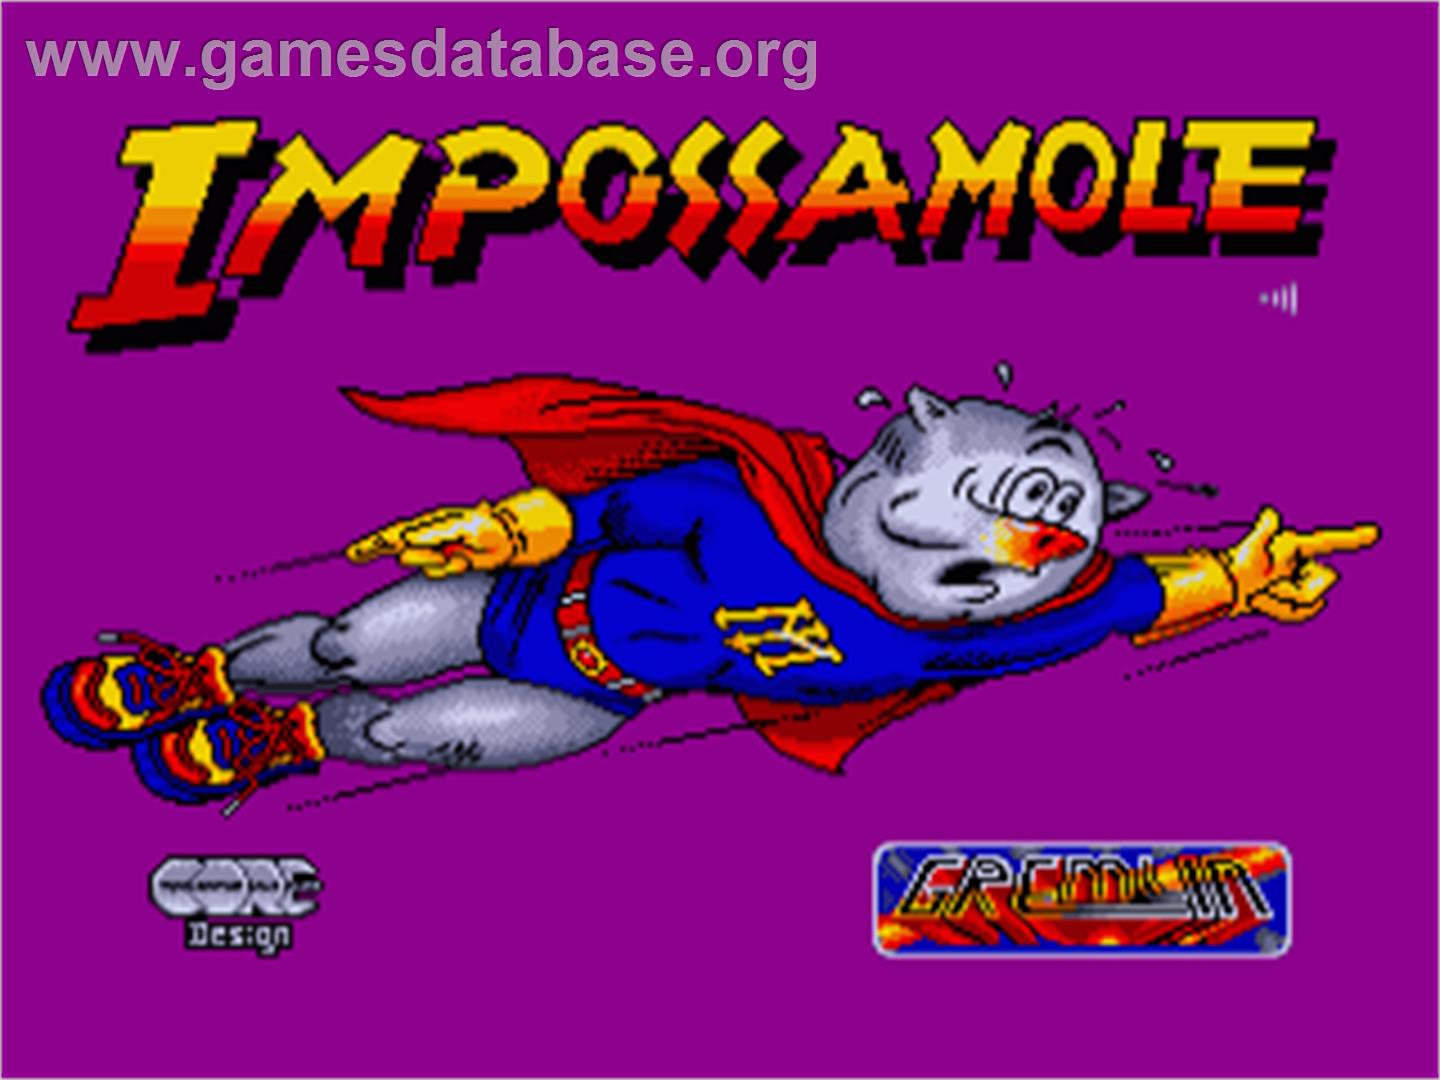 Impossamole - Commodore Amiga - Artwork - Title Screen